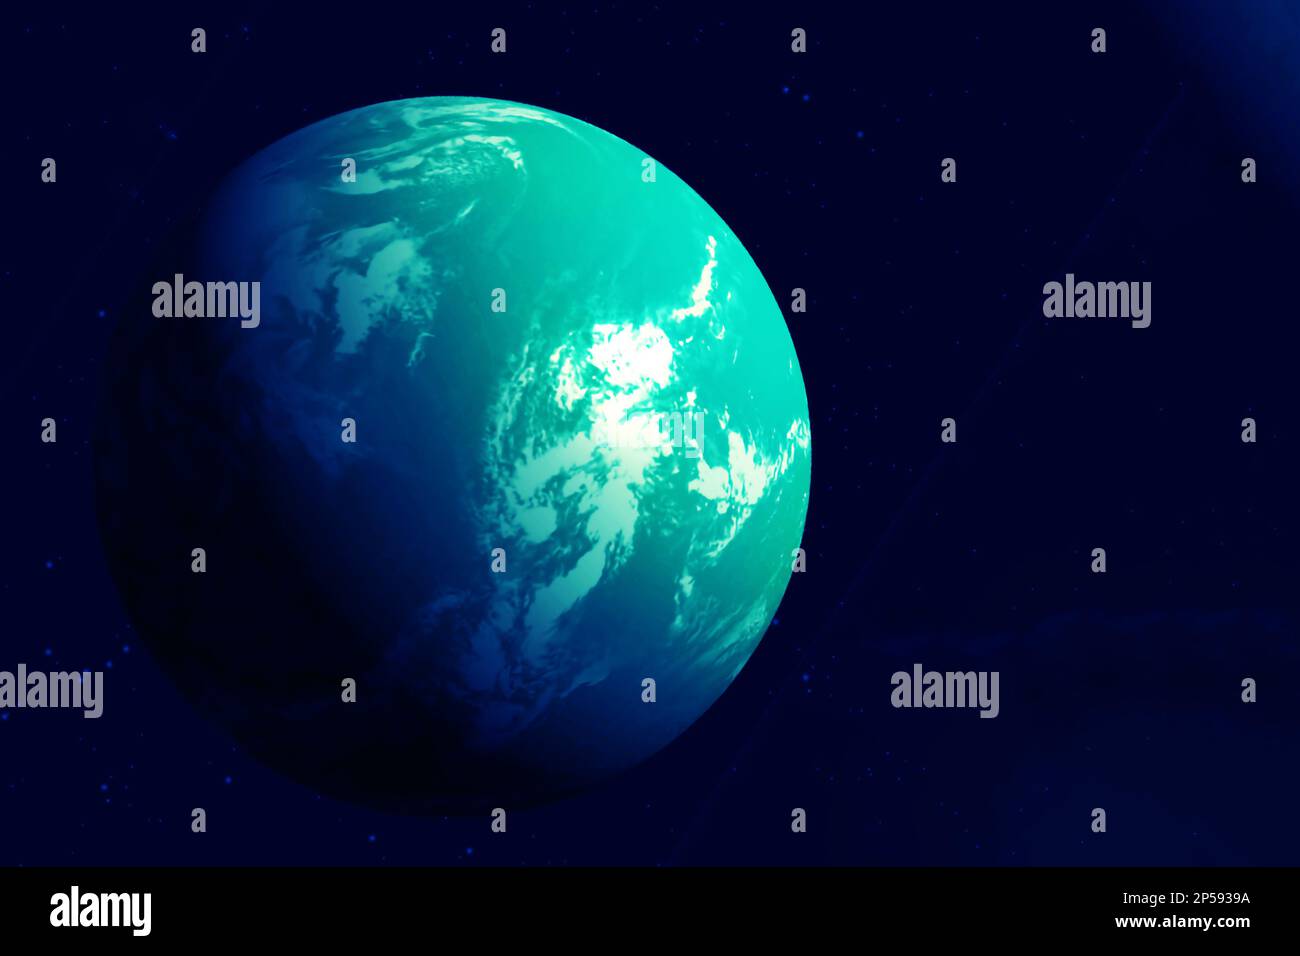 Exoplanet für das Leben geeignet. Elemente dieses Bildes, die der NASA entsprechen. Hochwertiges Foto Stockfoto